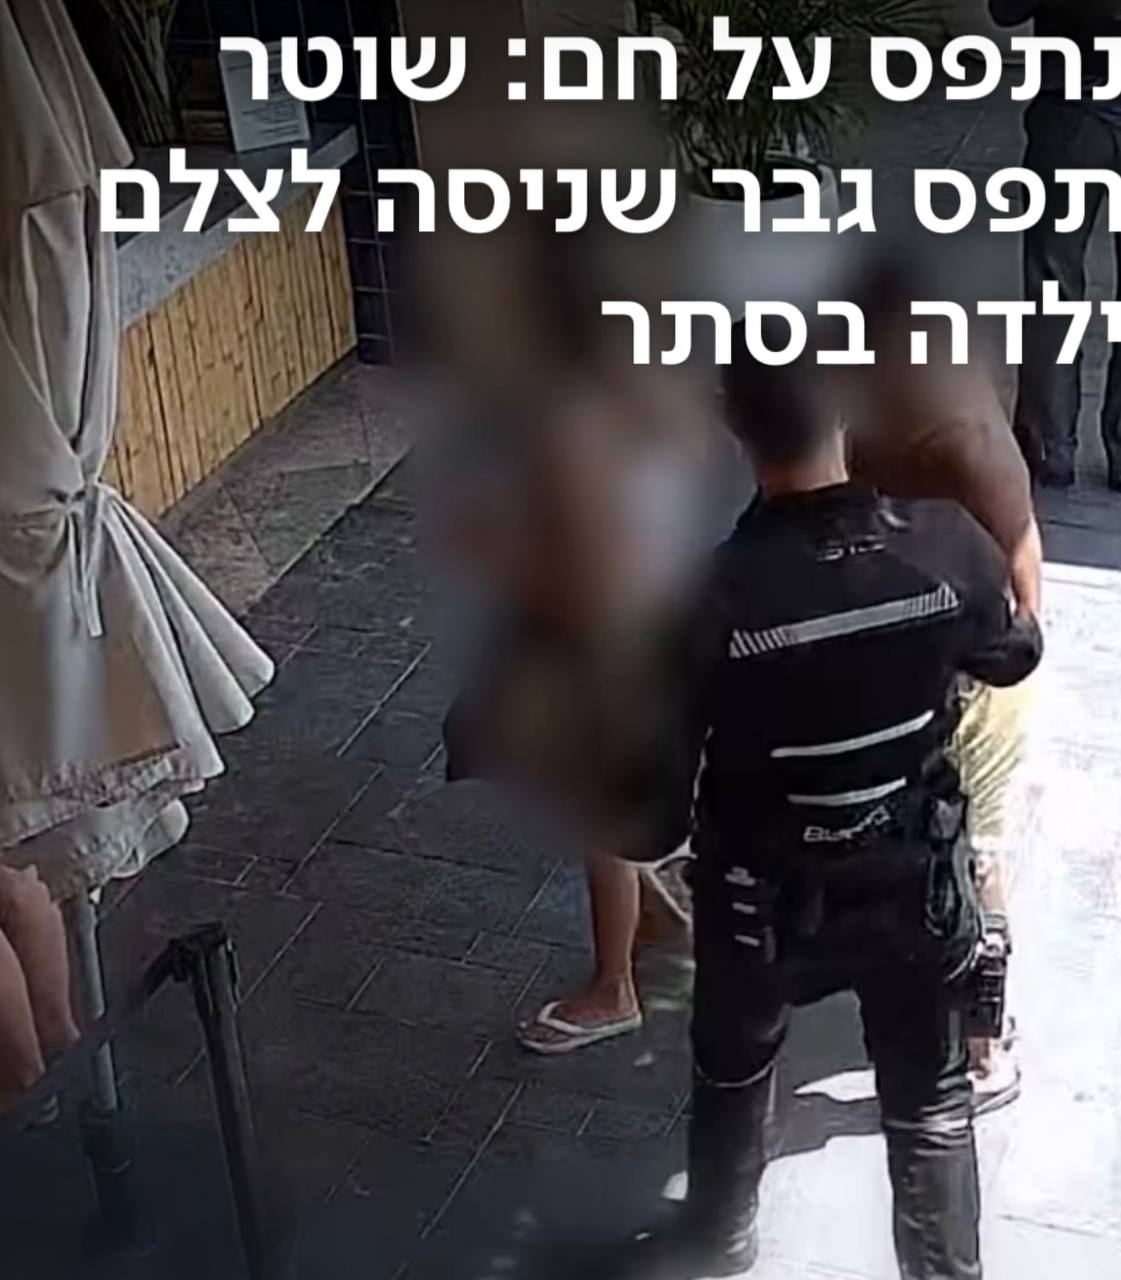 נתפס על חם : שוטר תפס גבר שצילם ילדה במצלמה נסתרת